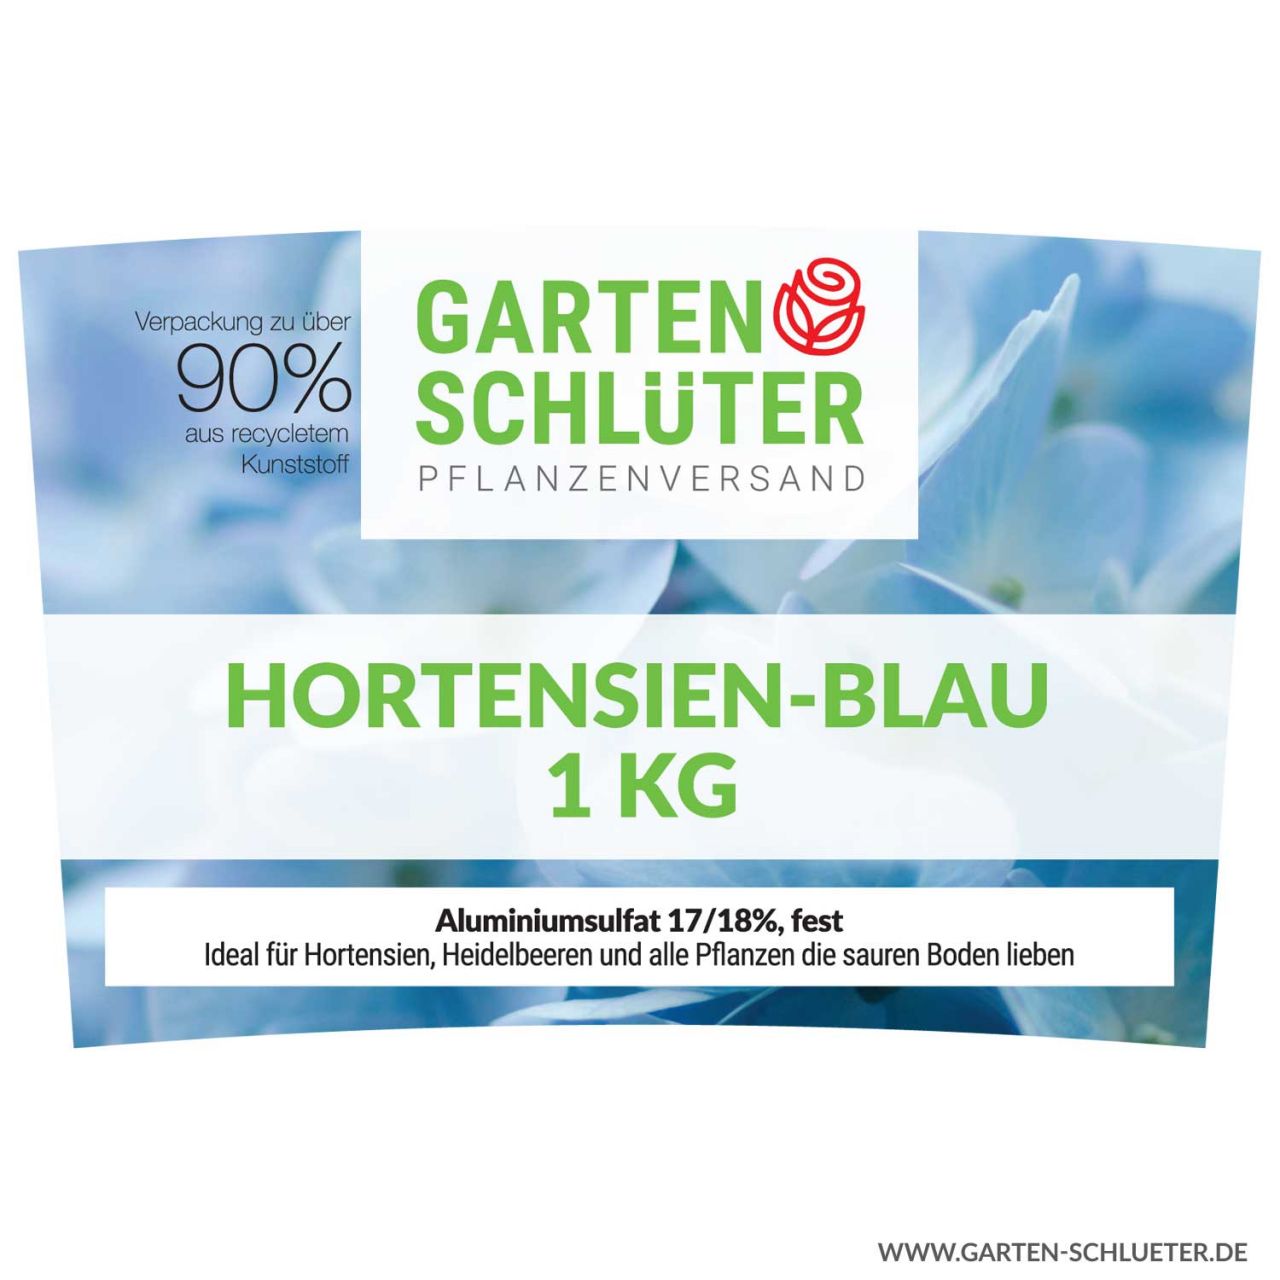 Schlüter’s Hortensien-Blau – 1 kg Blaue Hortensien durch sauren Boden